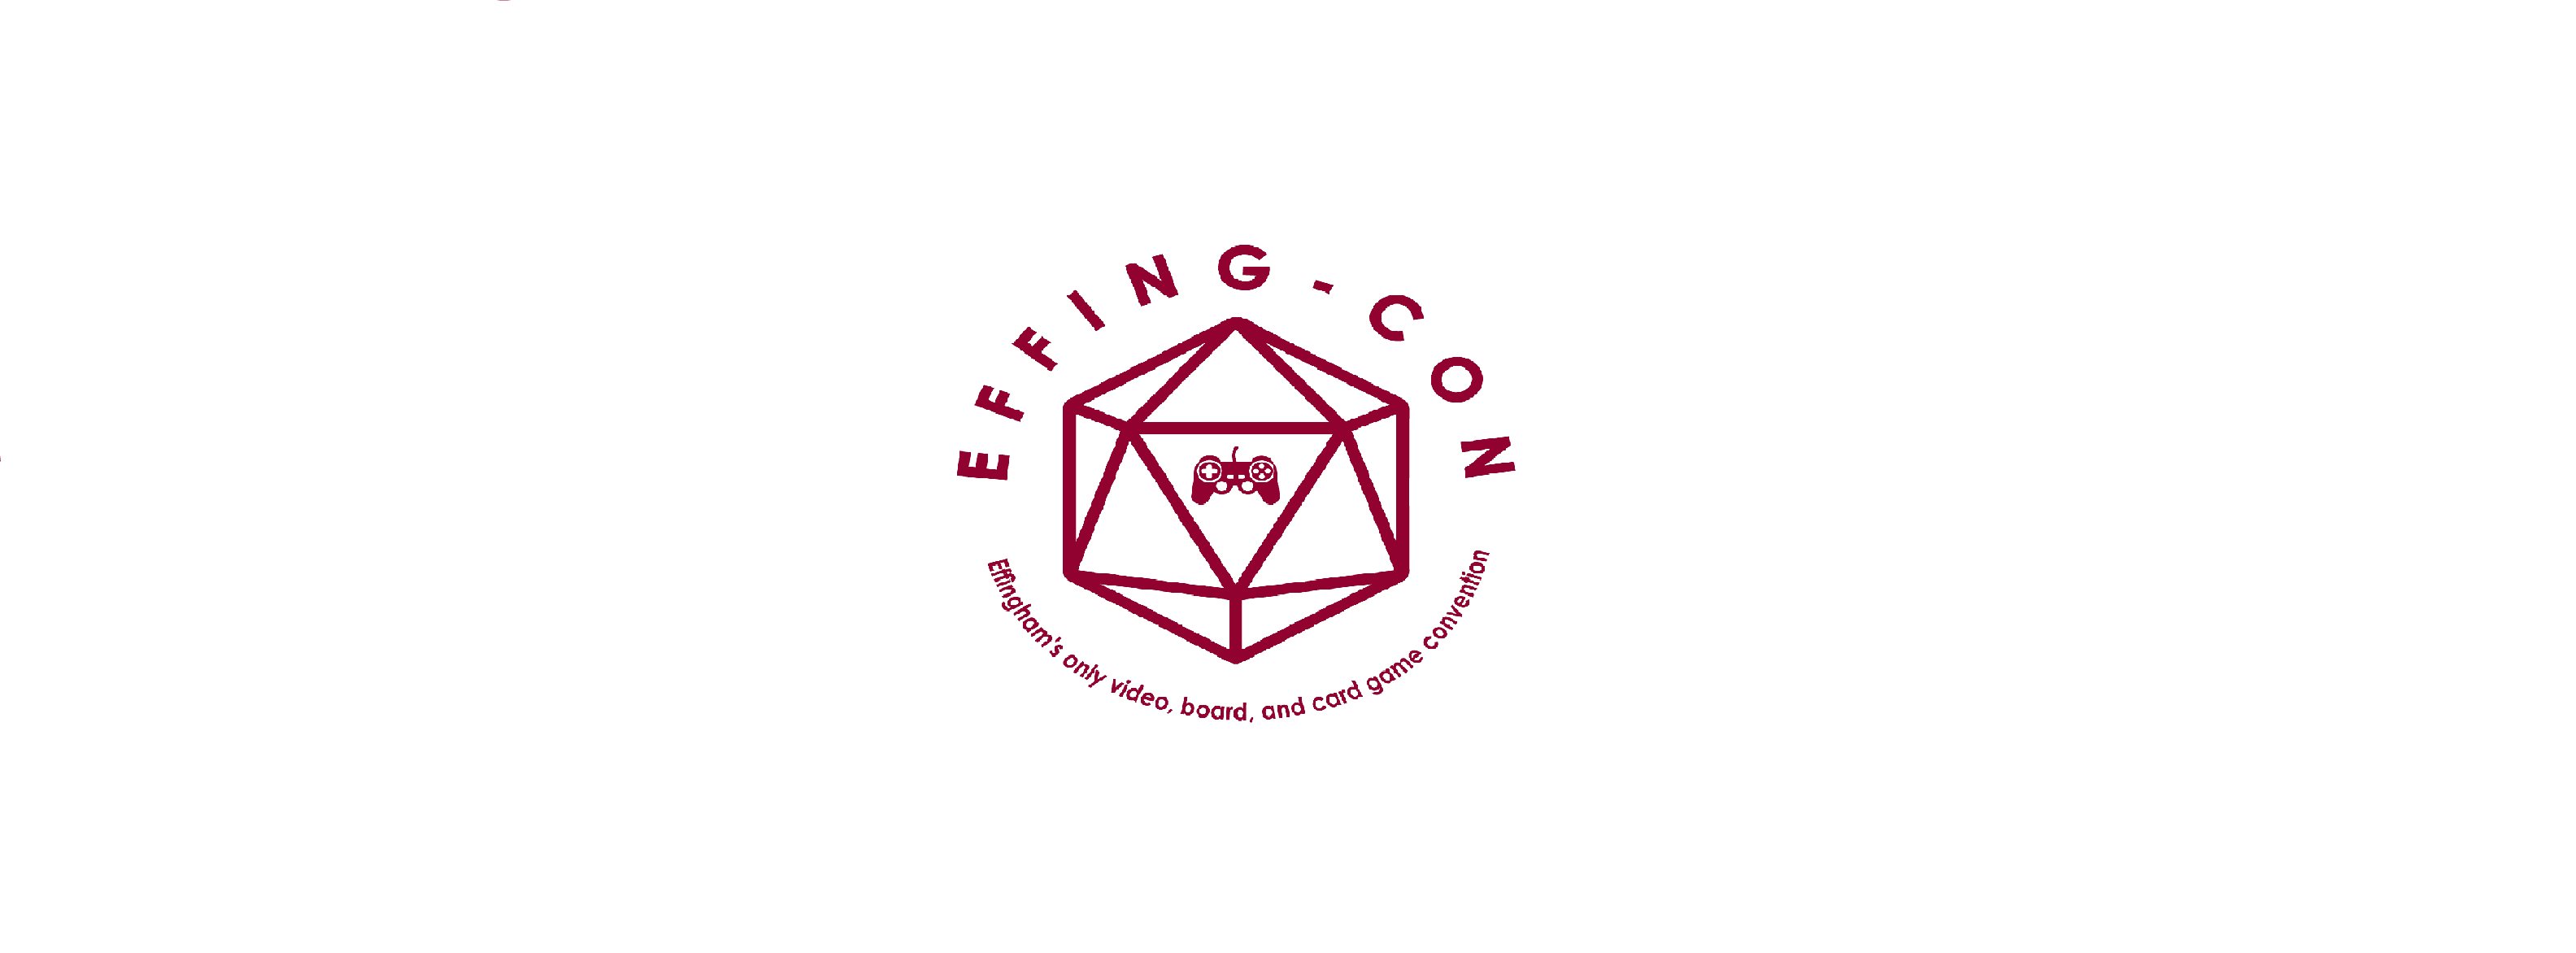 Effing-Con